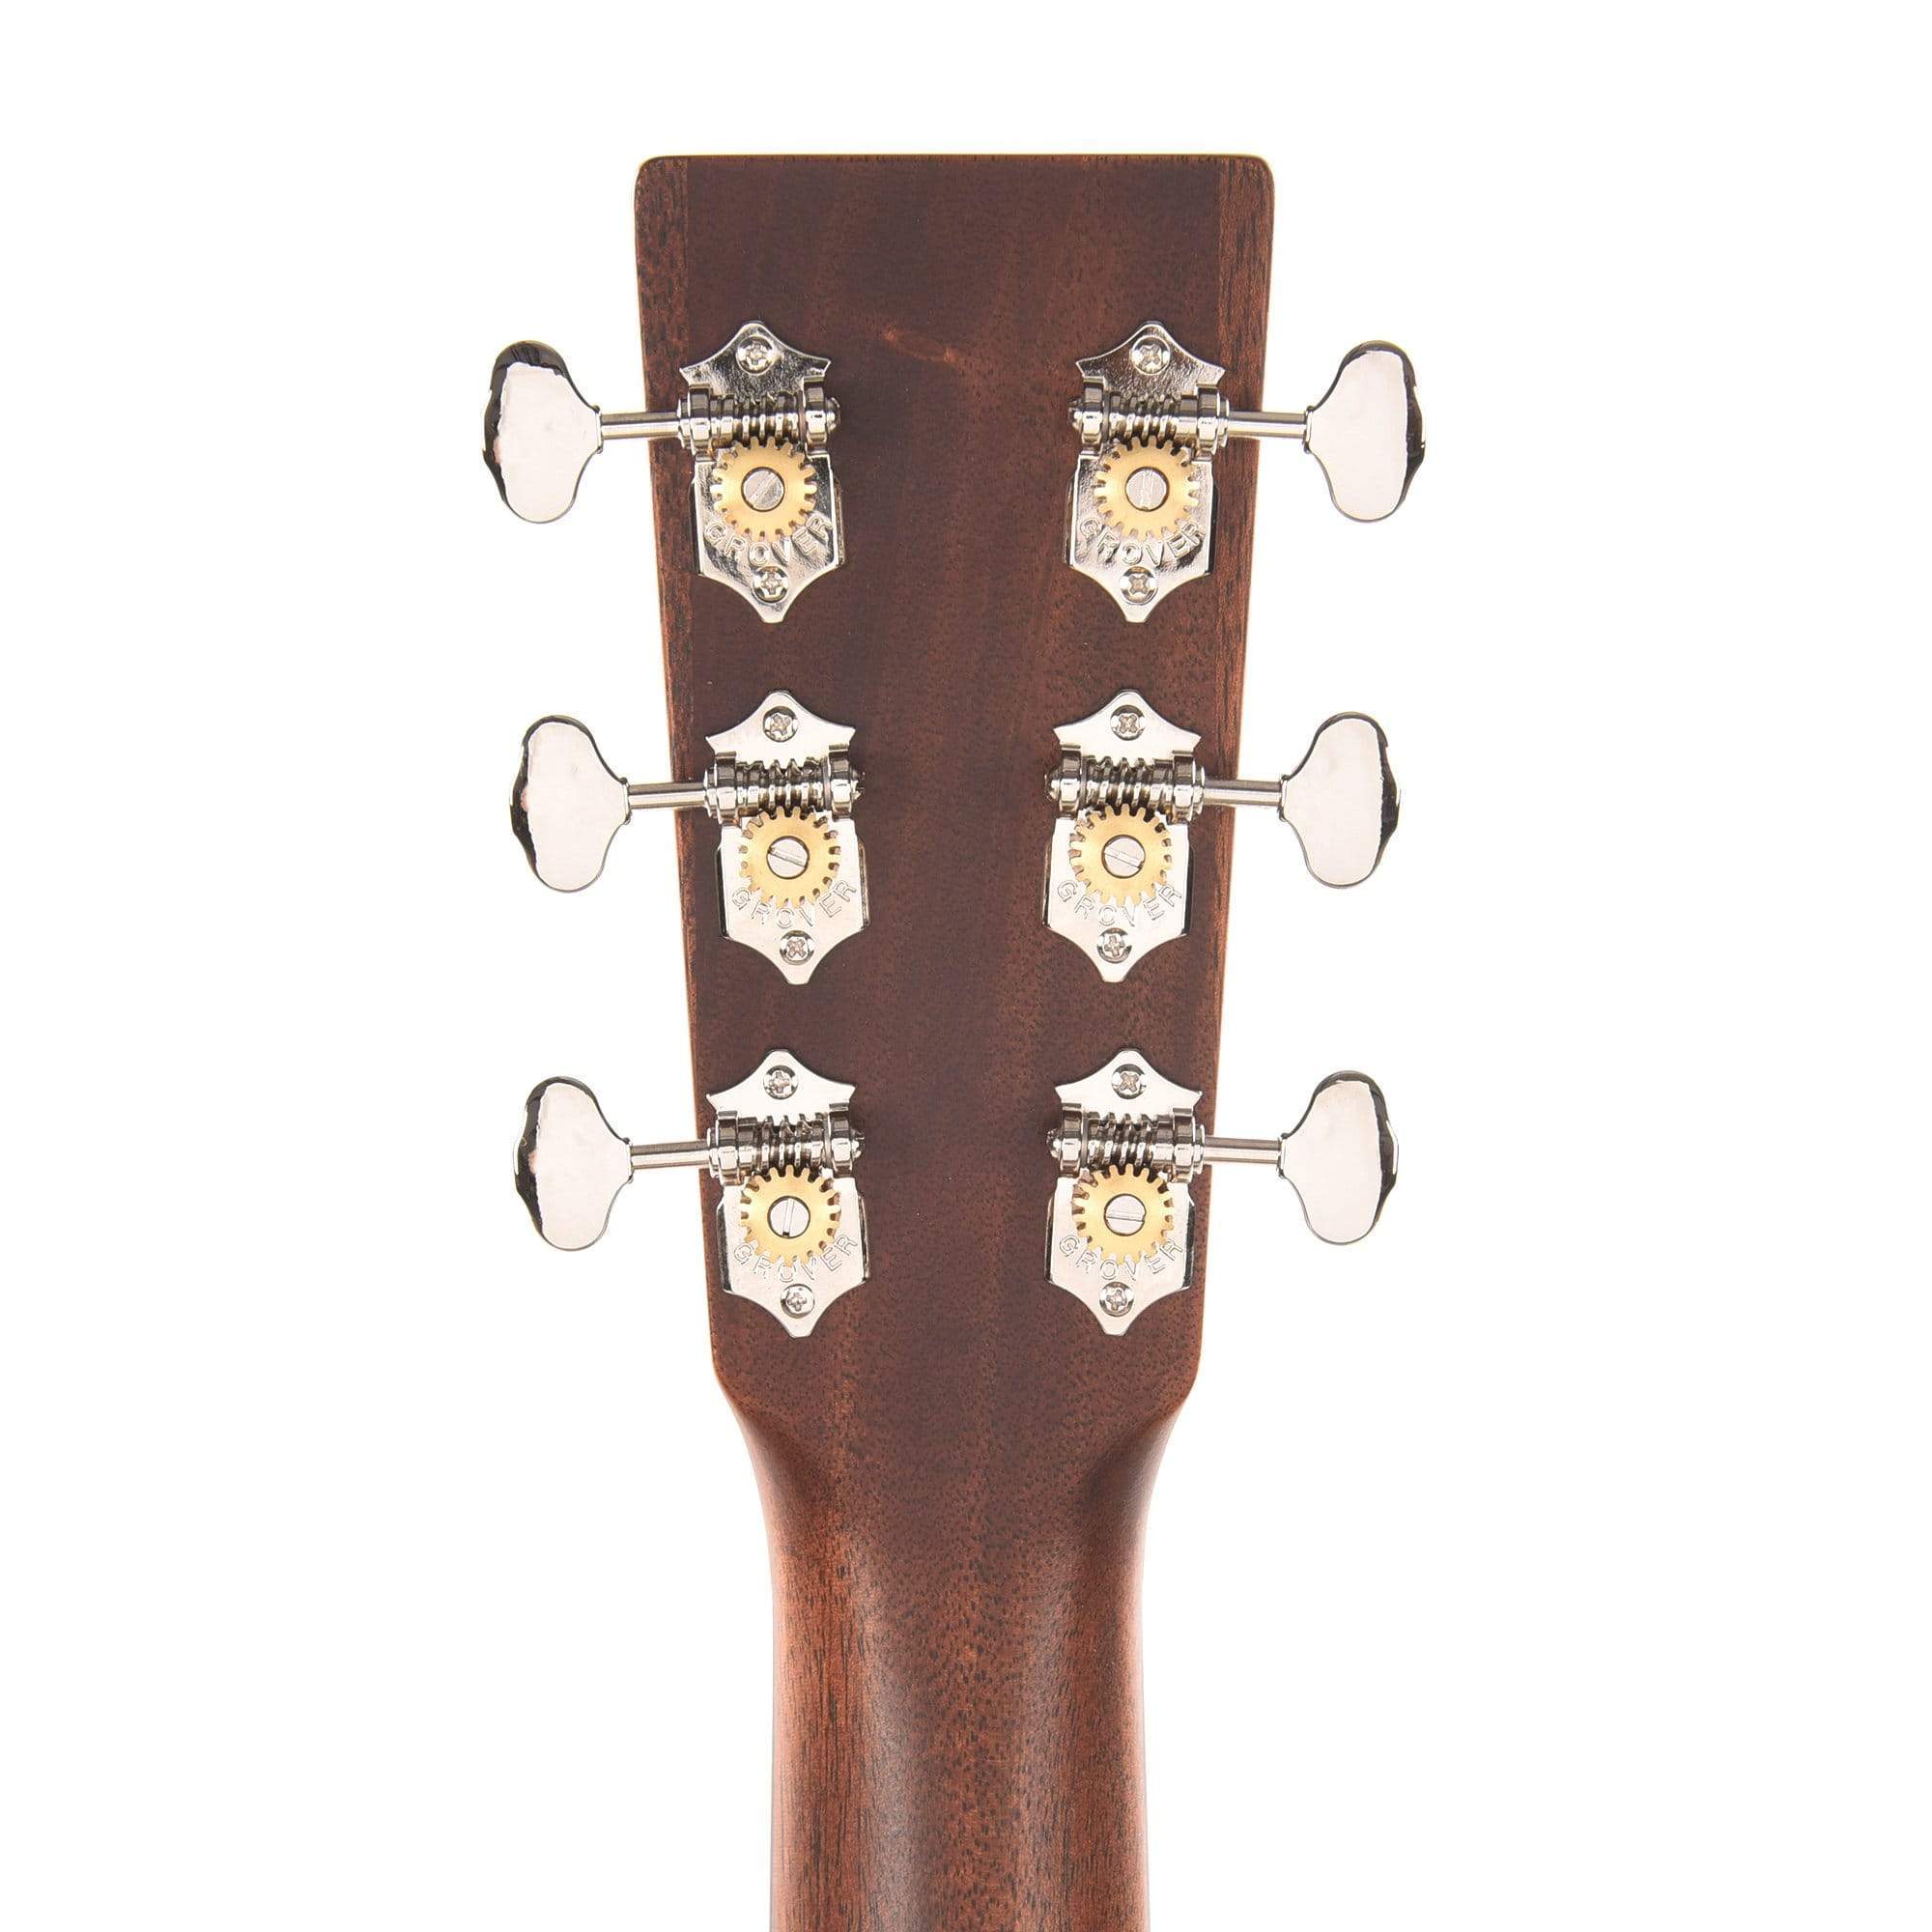 Martin D16EL Sitka Spruce/Rosewood w/Pickup LEFTY Acoustic Guitars / Left-Handed